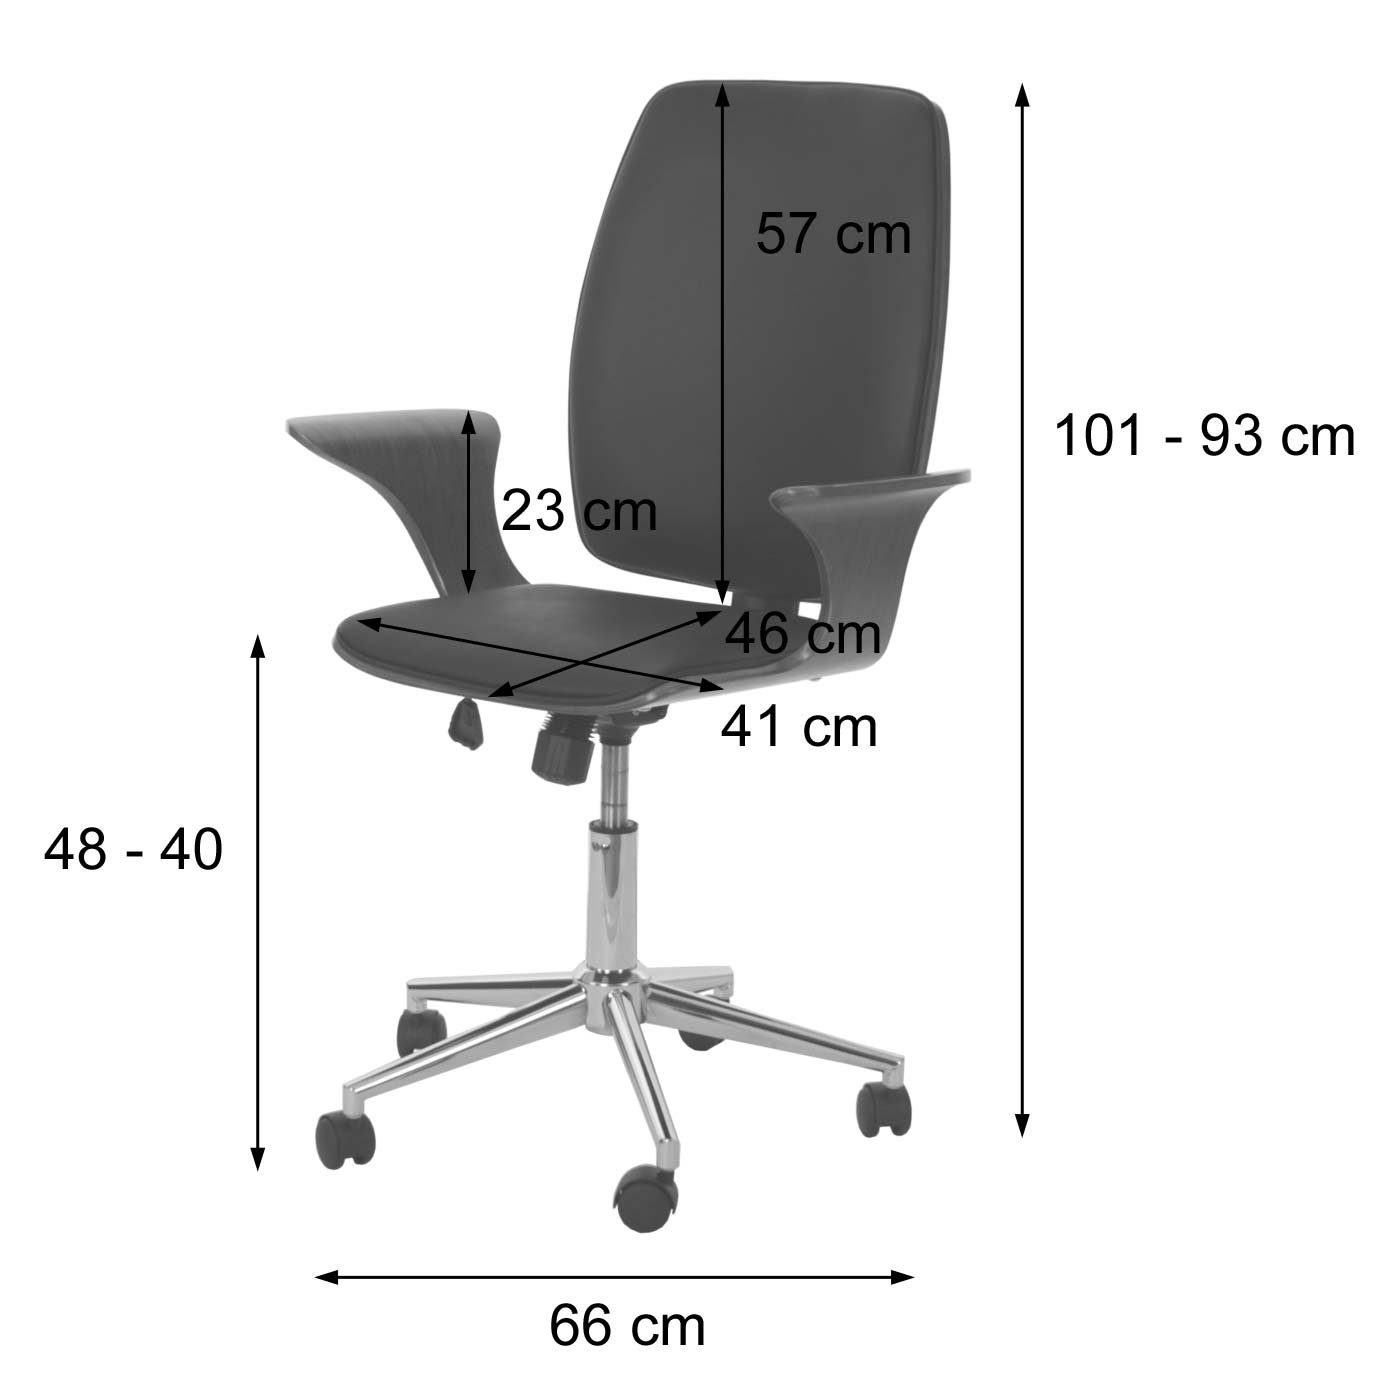 MCW Schreibtischstuhl mit Wipptechnik, Härtegrad Armlehnen MCW-C54, grau,schwarz einstellbar, Sitzschale